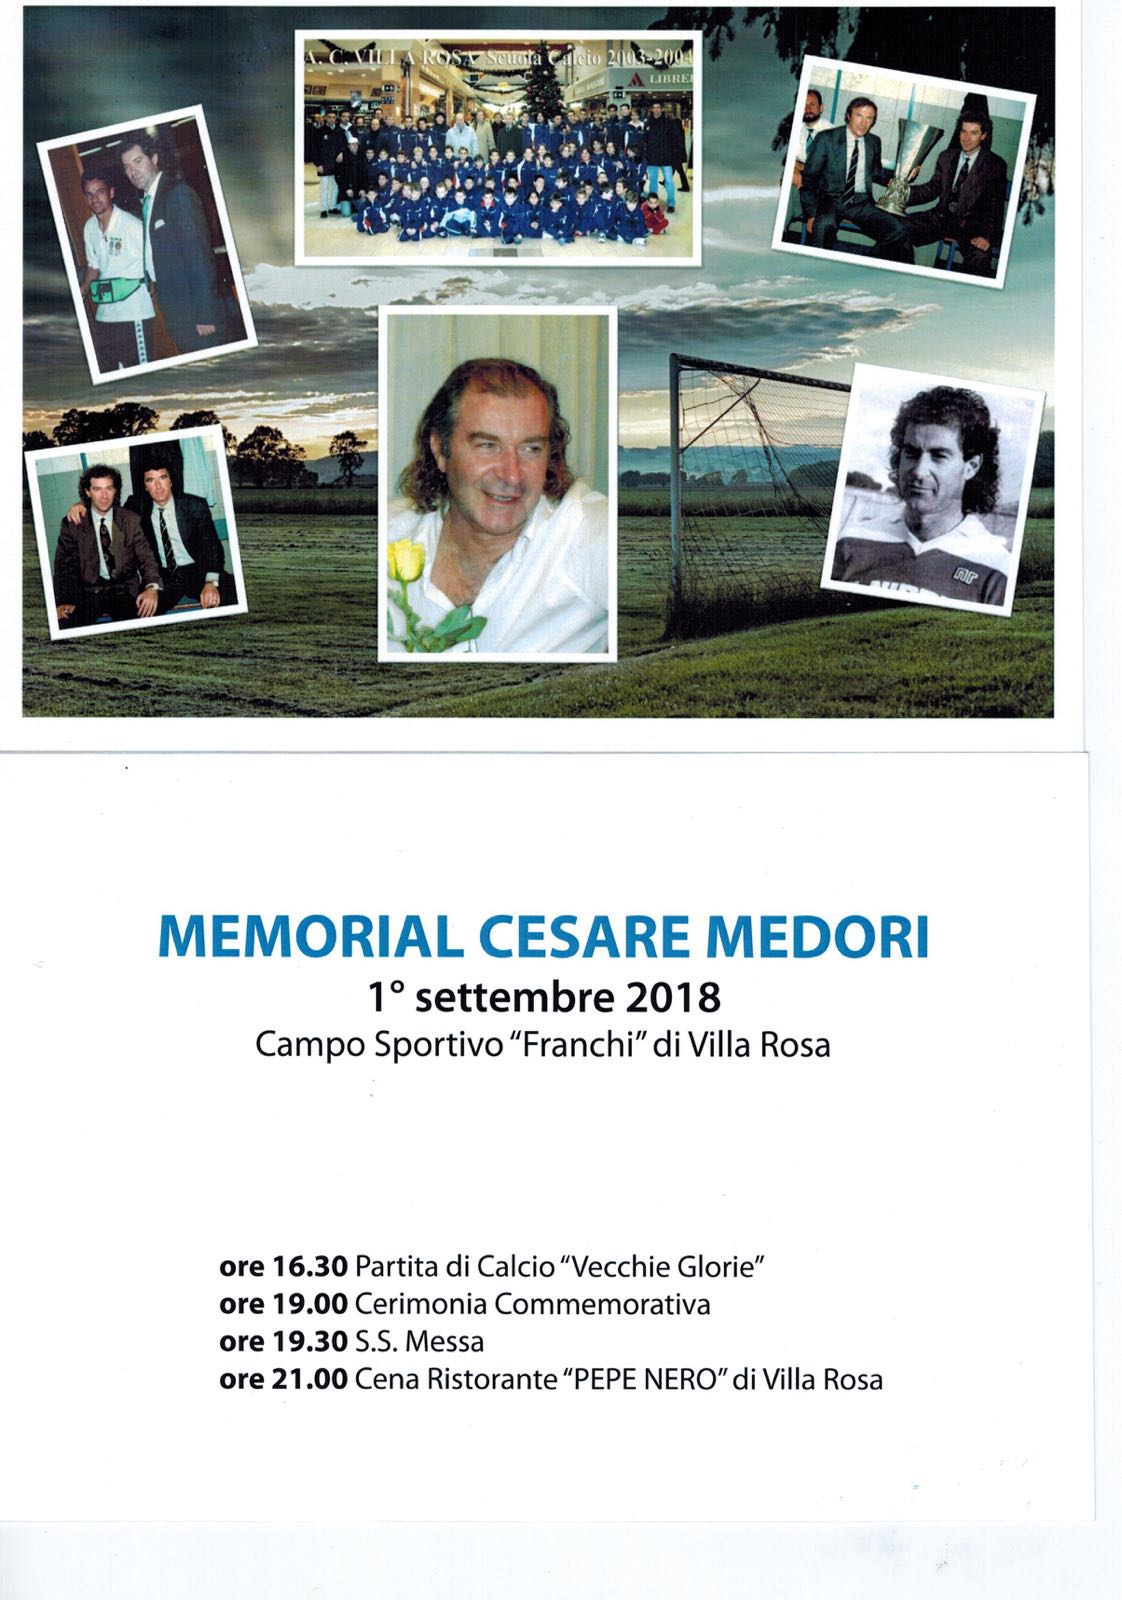 Martinsicuro Calcio.Domani (1° settembre 2018) a Villa Rosa “1° Memorial Cesare Medori”